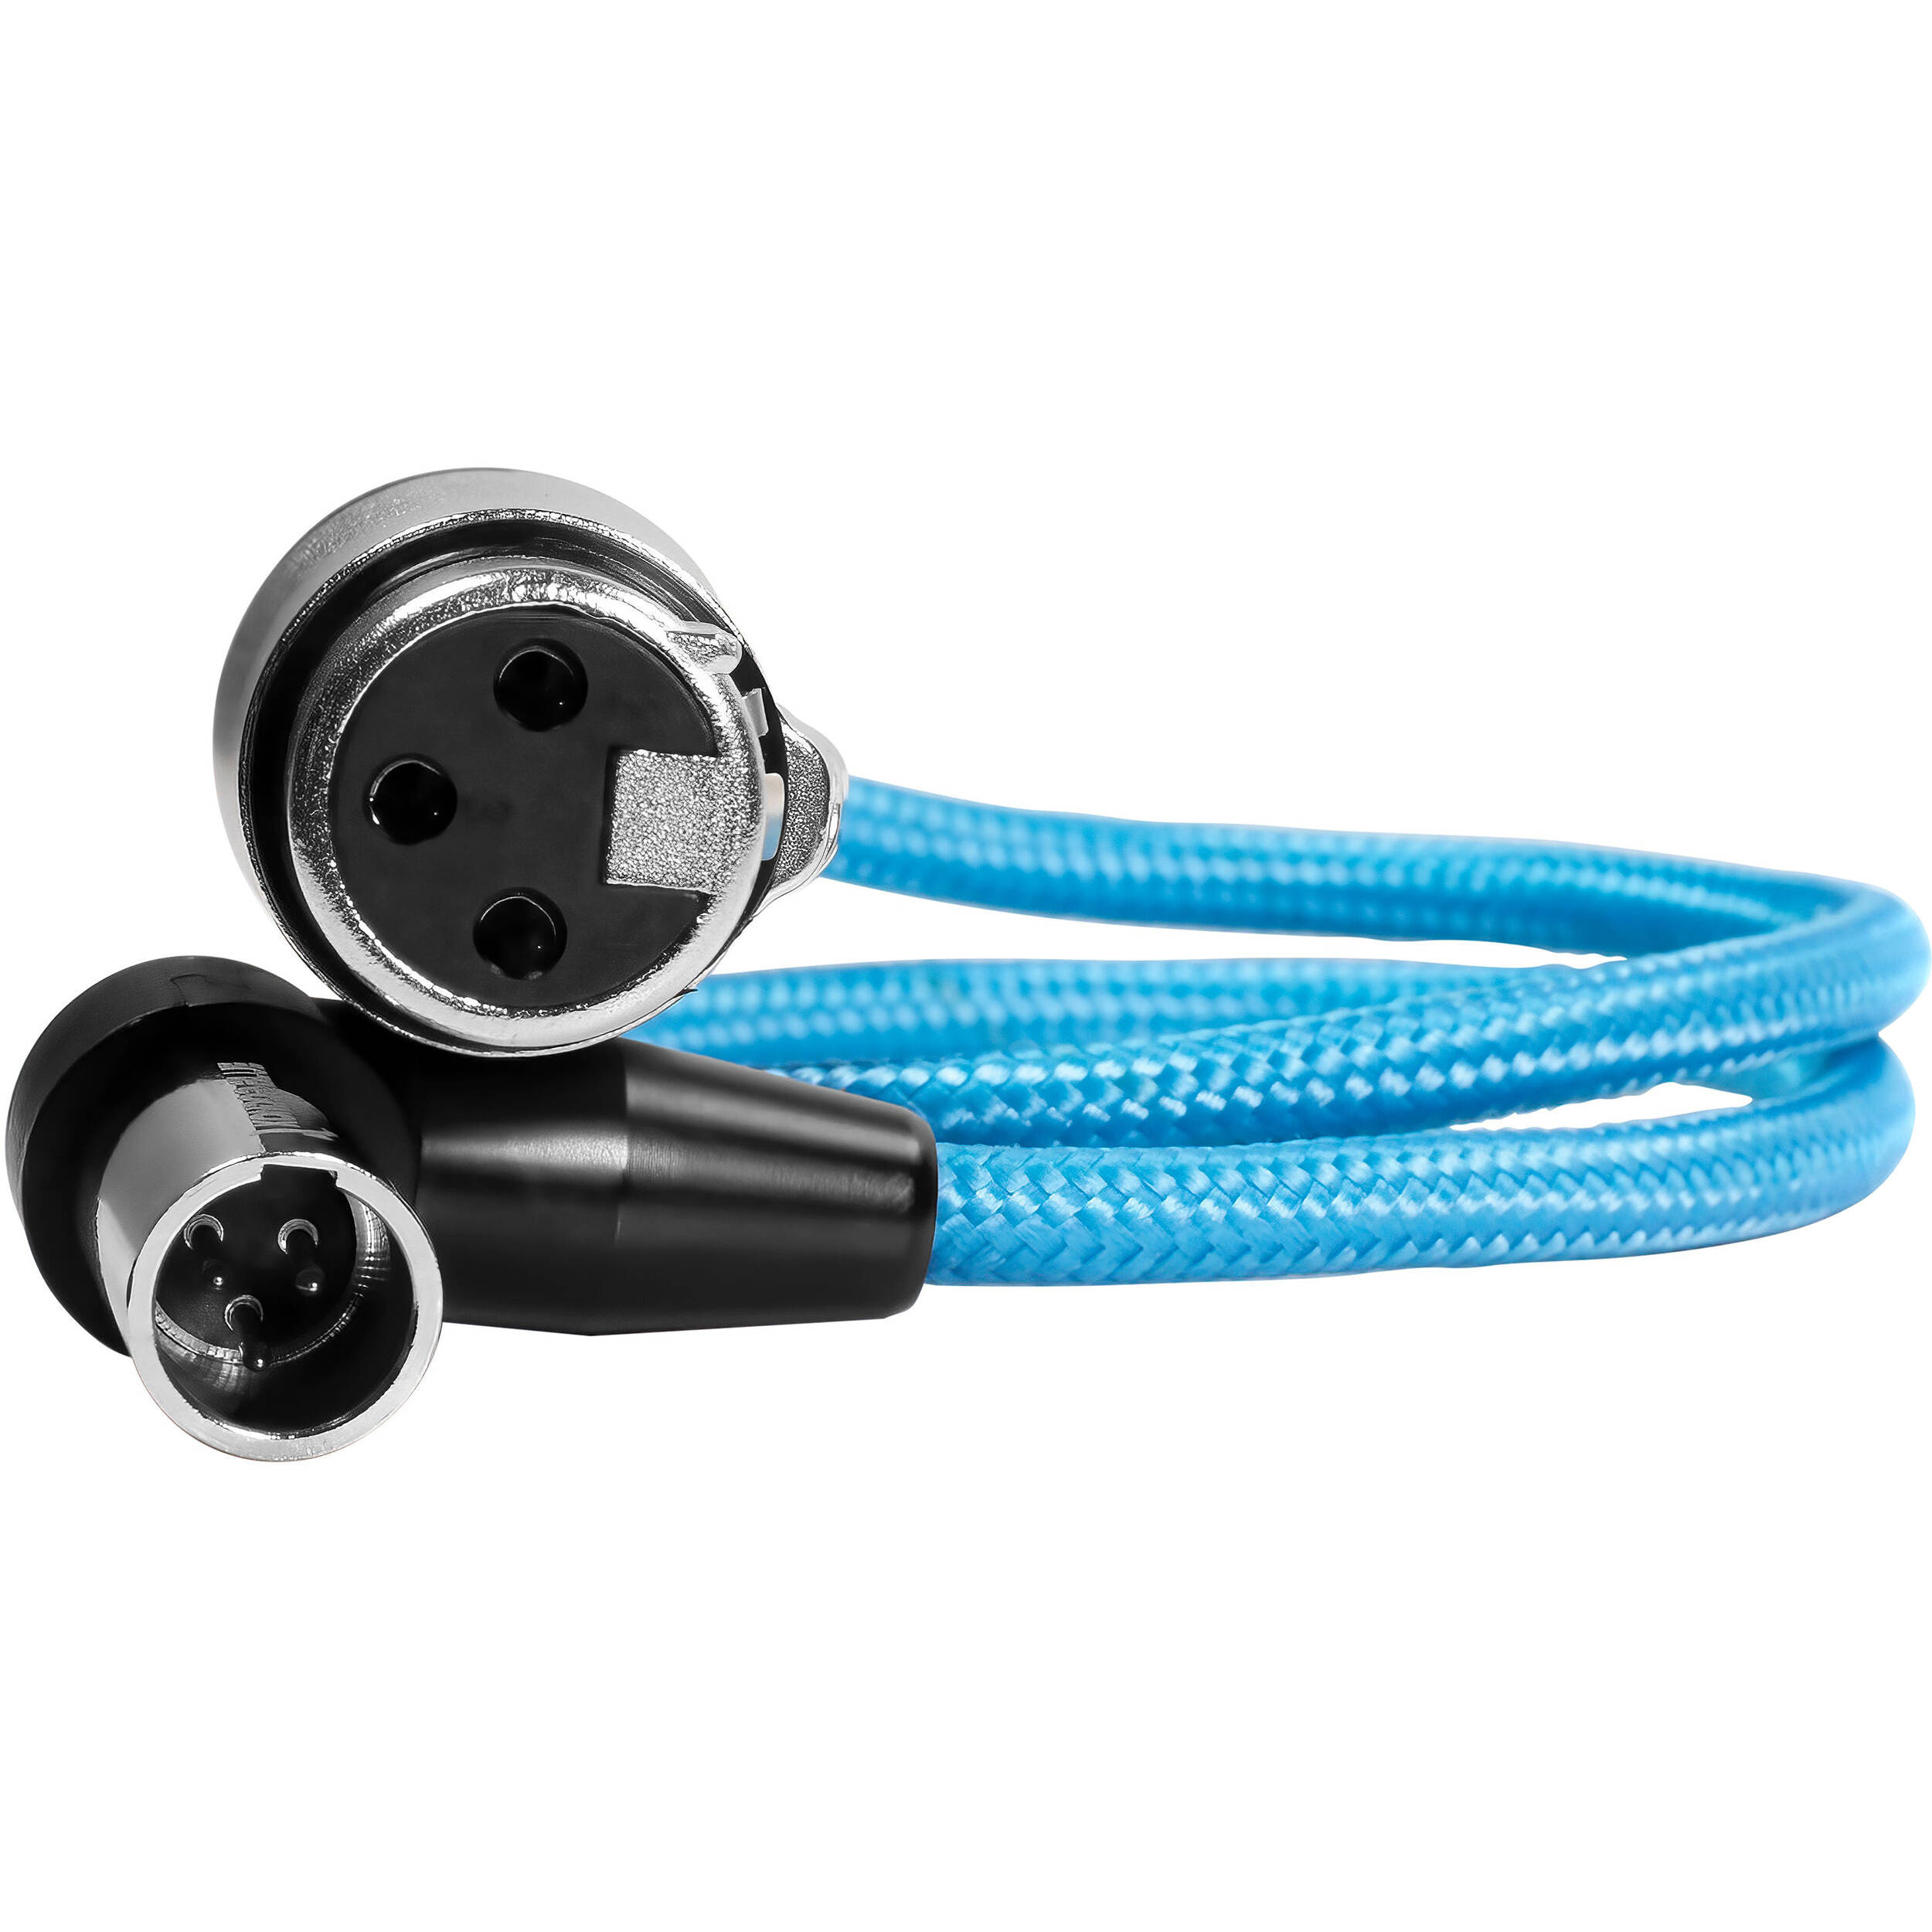 Kondor Blue Right-Angle Mini-XLR Male to XLR Female Cable for BMPCC 6K Pro & Canon C70 (43cm)